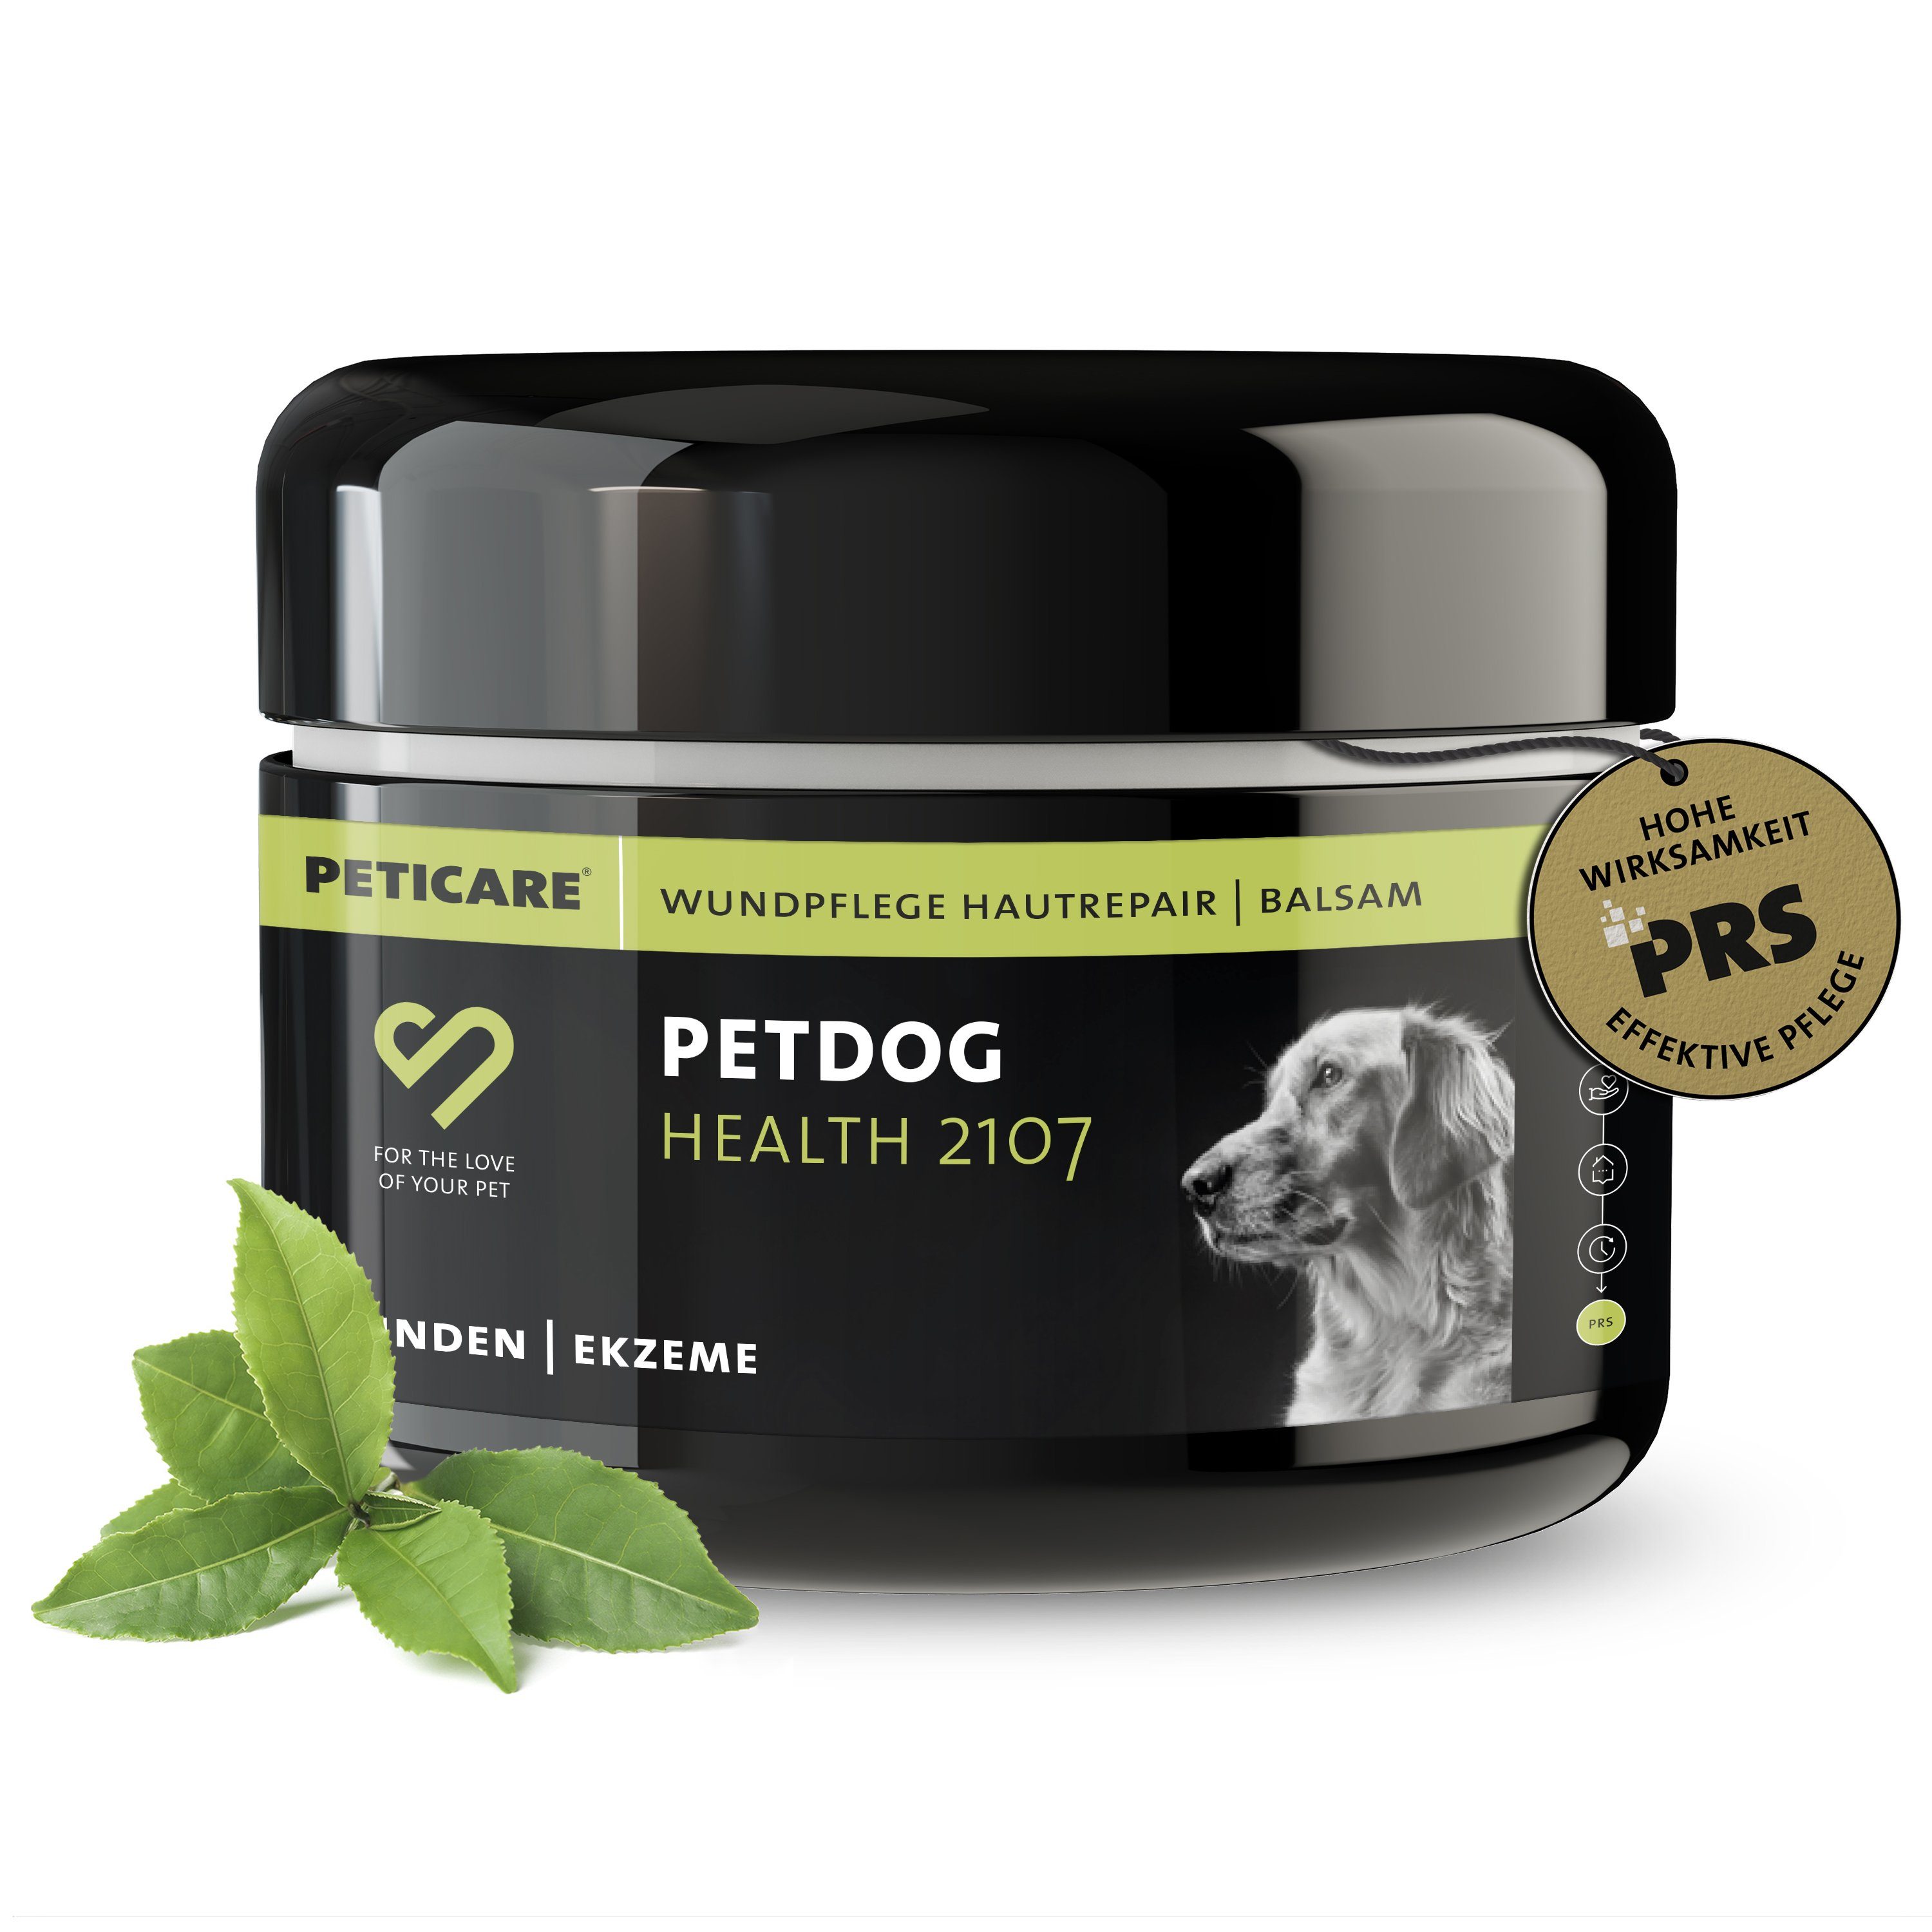 Peticare Paraffinwachs petDog Health 2107 - Haut-Repair, Wund-Balsam für Haustiere